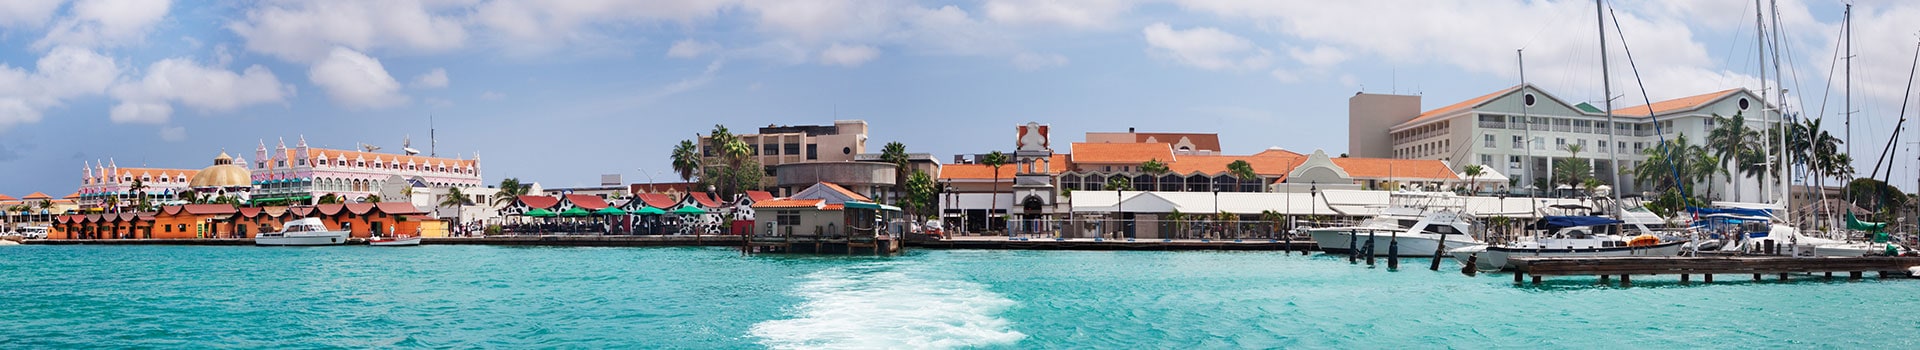 Aruba - oranjestad